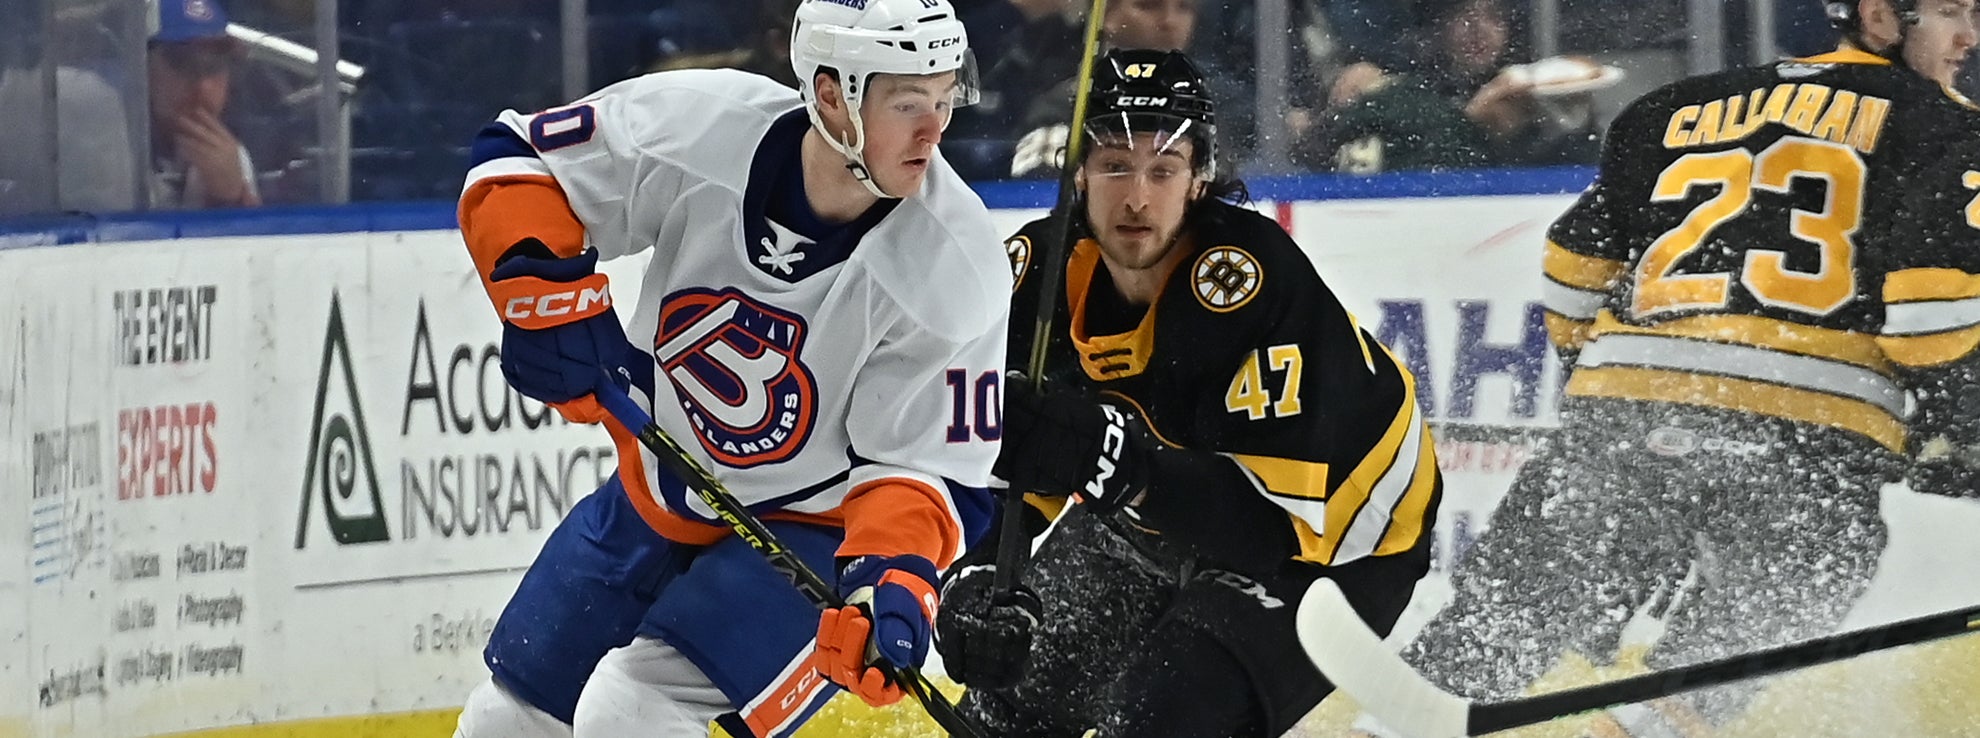 Preview: Islanders vs. Bruins